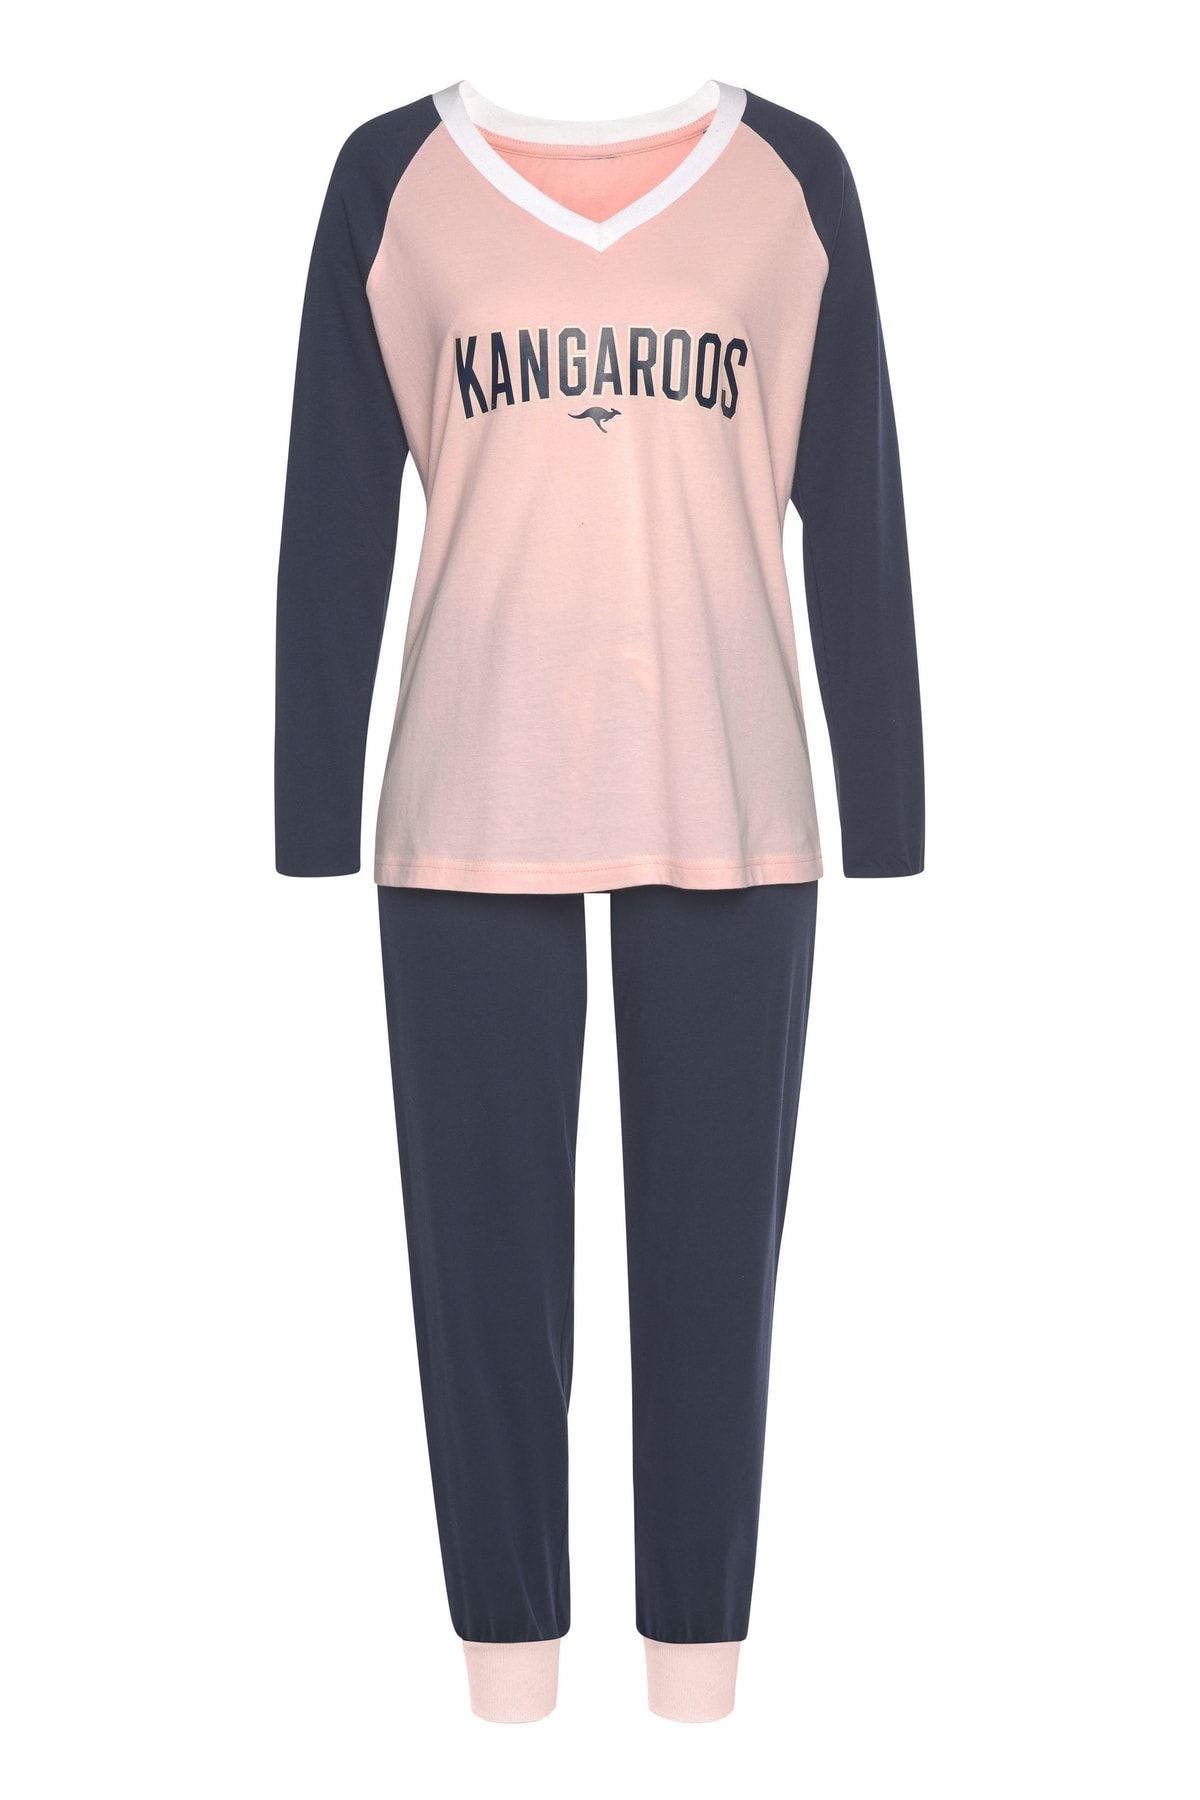 Kangaroos Pajama Set Trendyol - - Plain - Pink